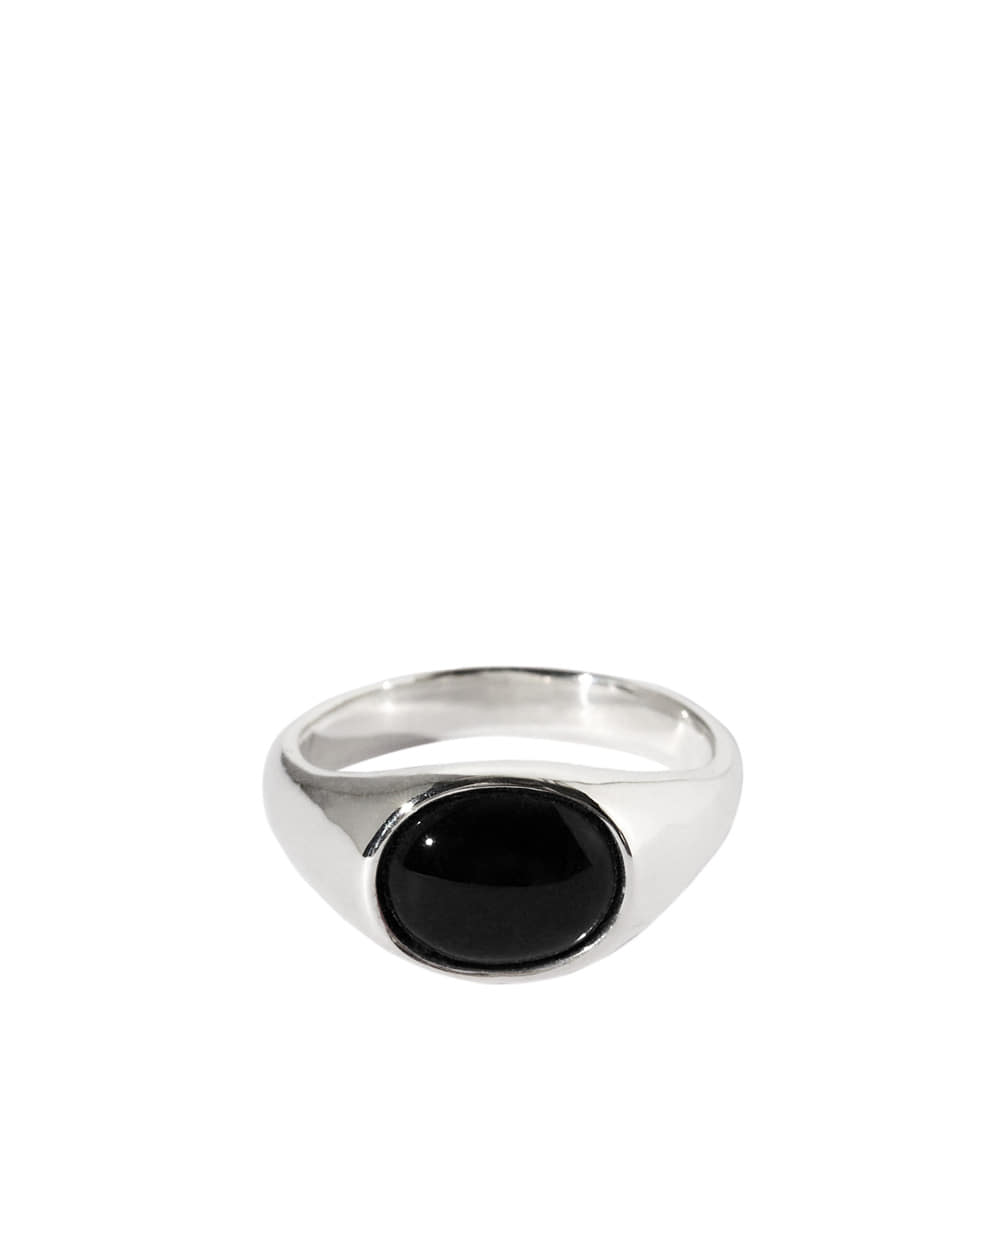 Noel gemstone ring / Silver